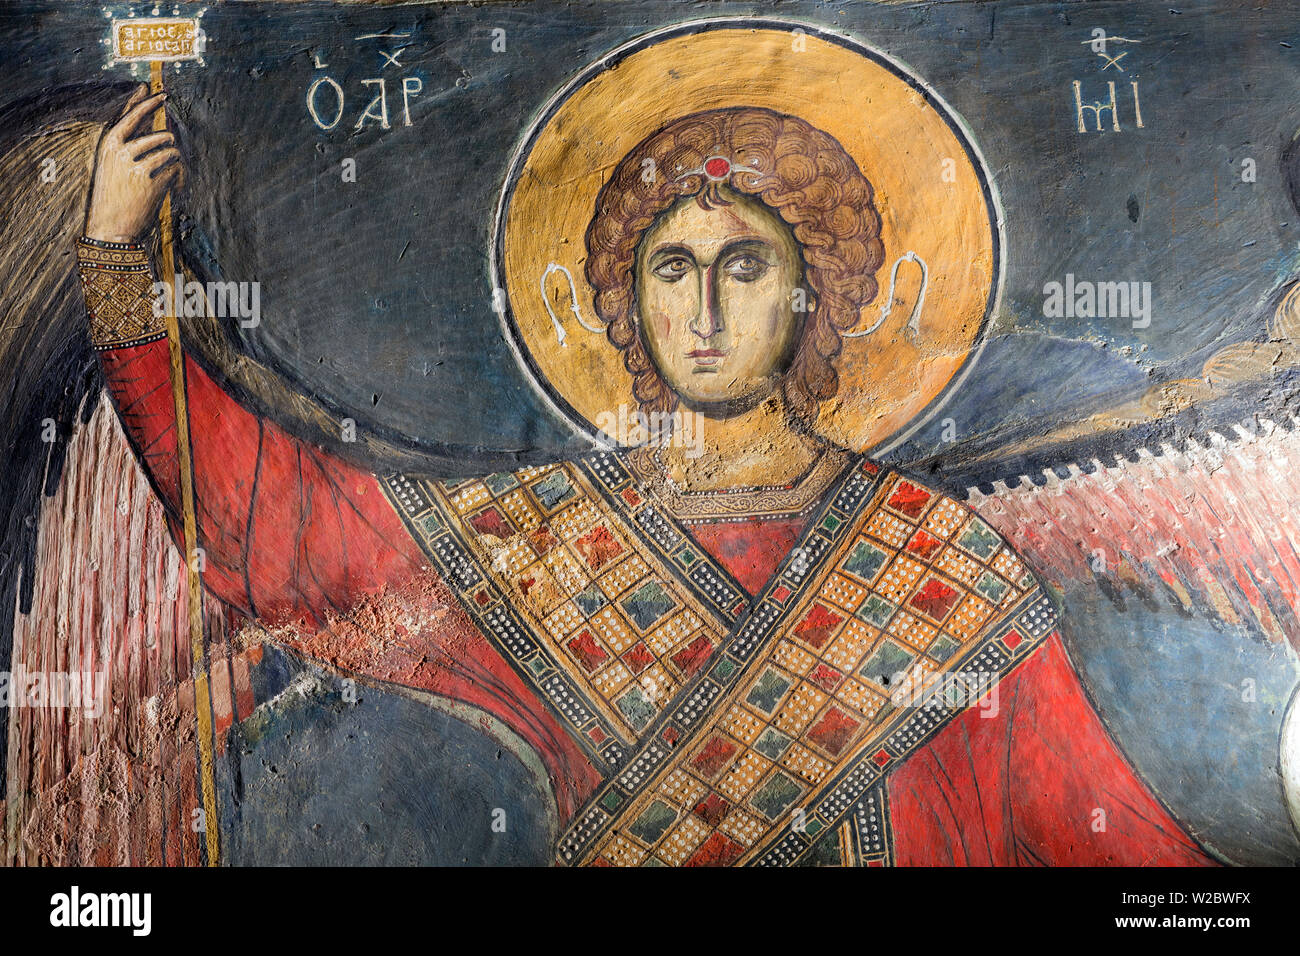 Byzantine fresco (12th century) in Panagia tou Arakou church, Lagoudhera, Troodos mountains, Cyprus Stock Photo